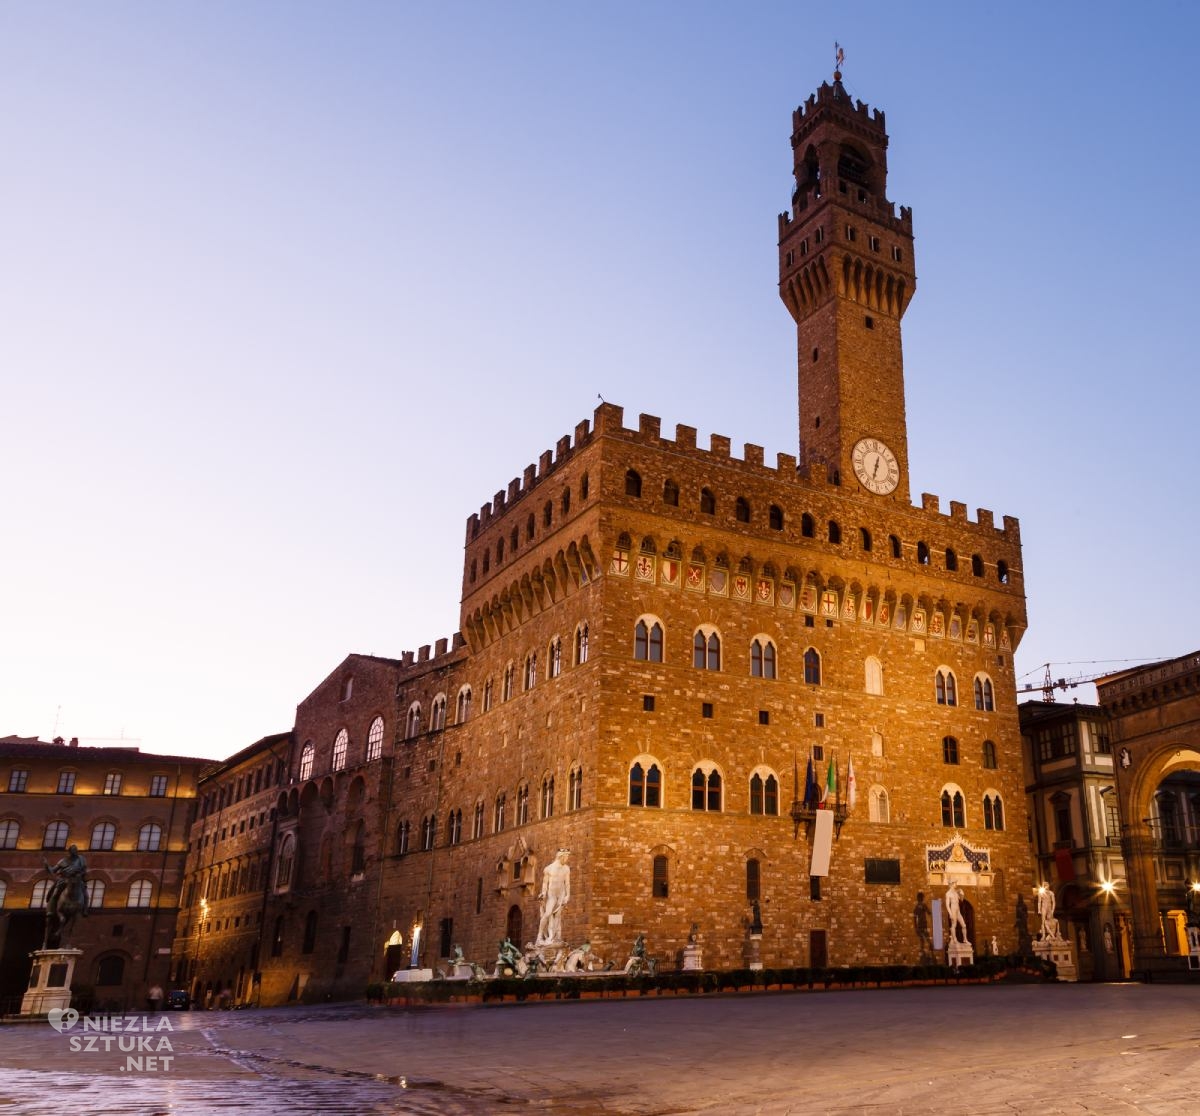 Palazzo Vecchio, niezła sztuka